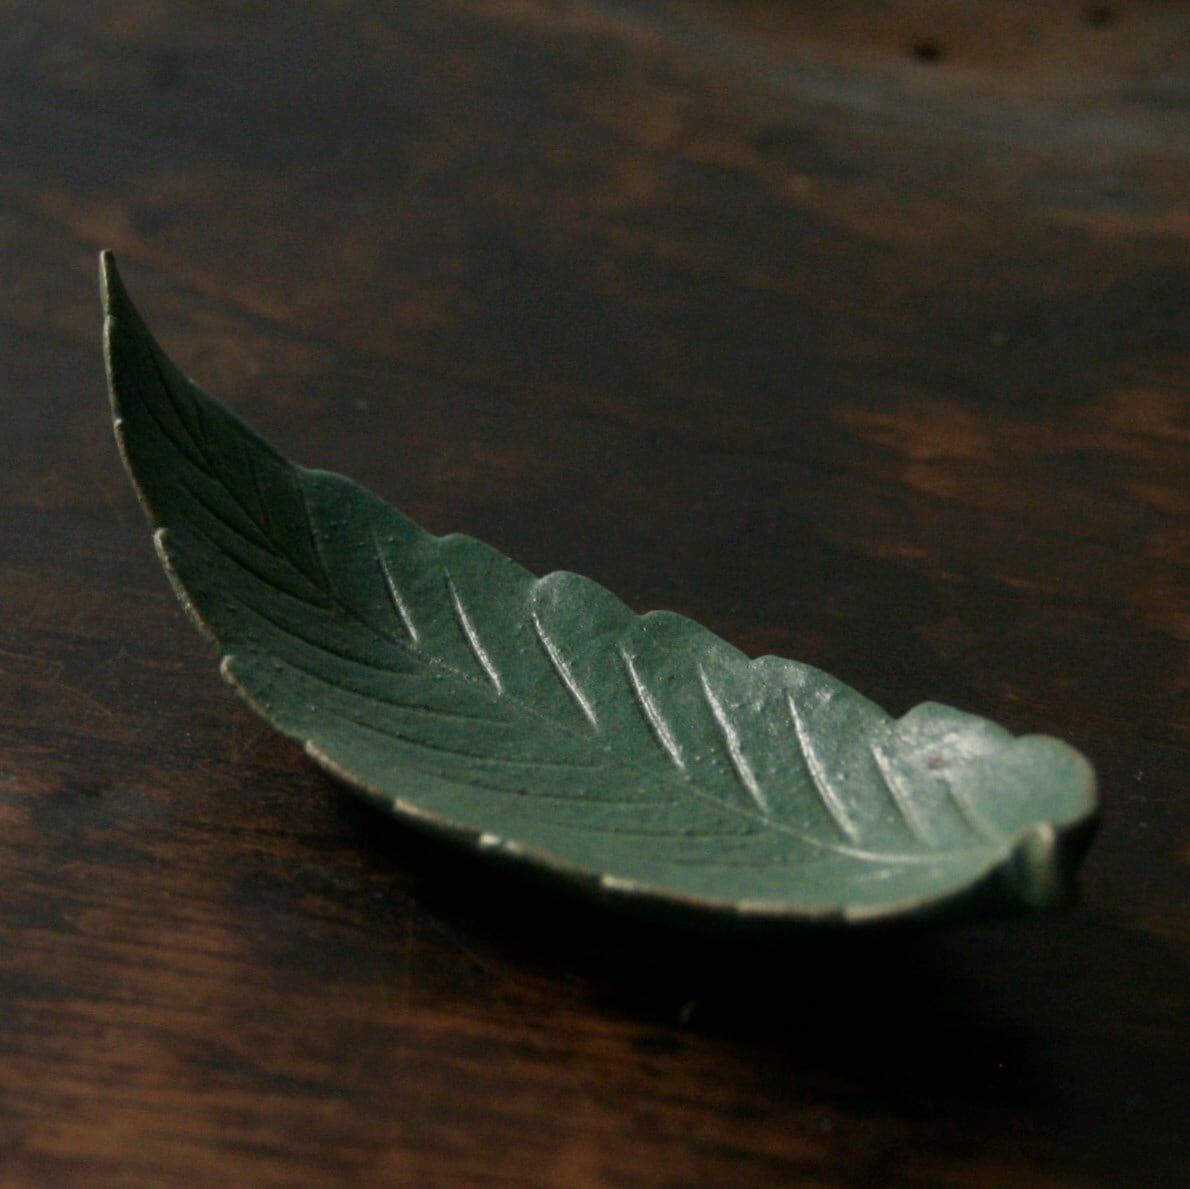 【'23 秋】葉豆皿 箸置き 栗の葉 (幅 13 cm)